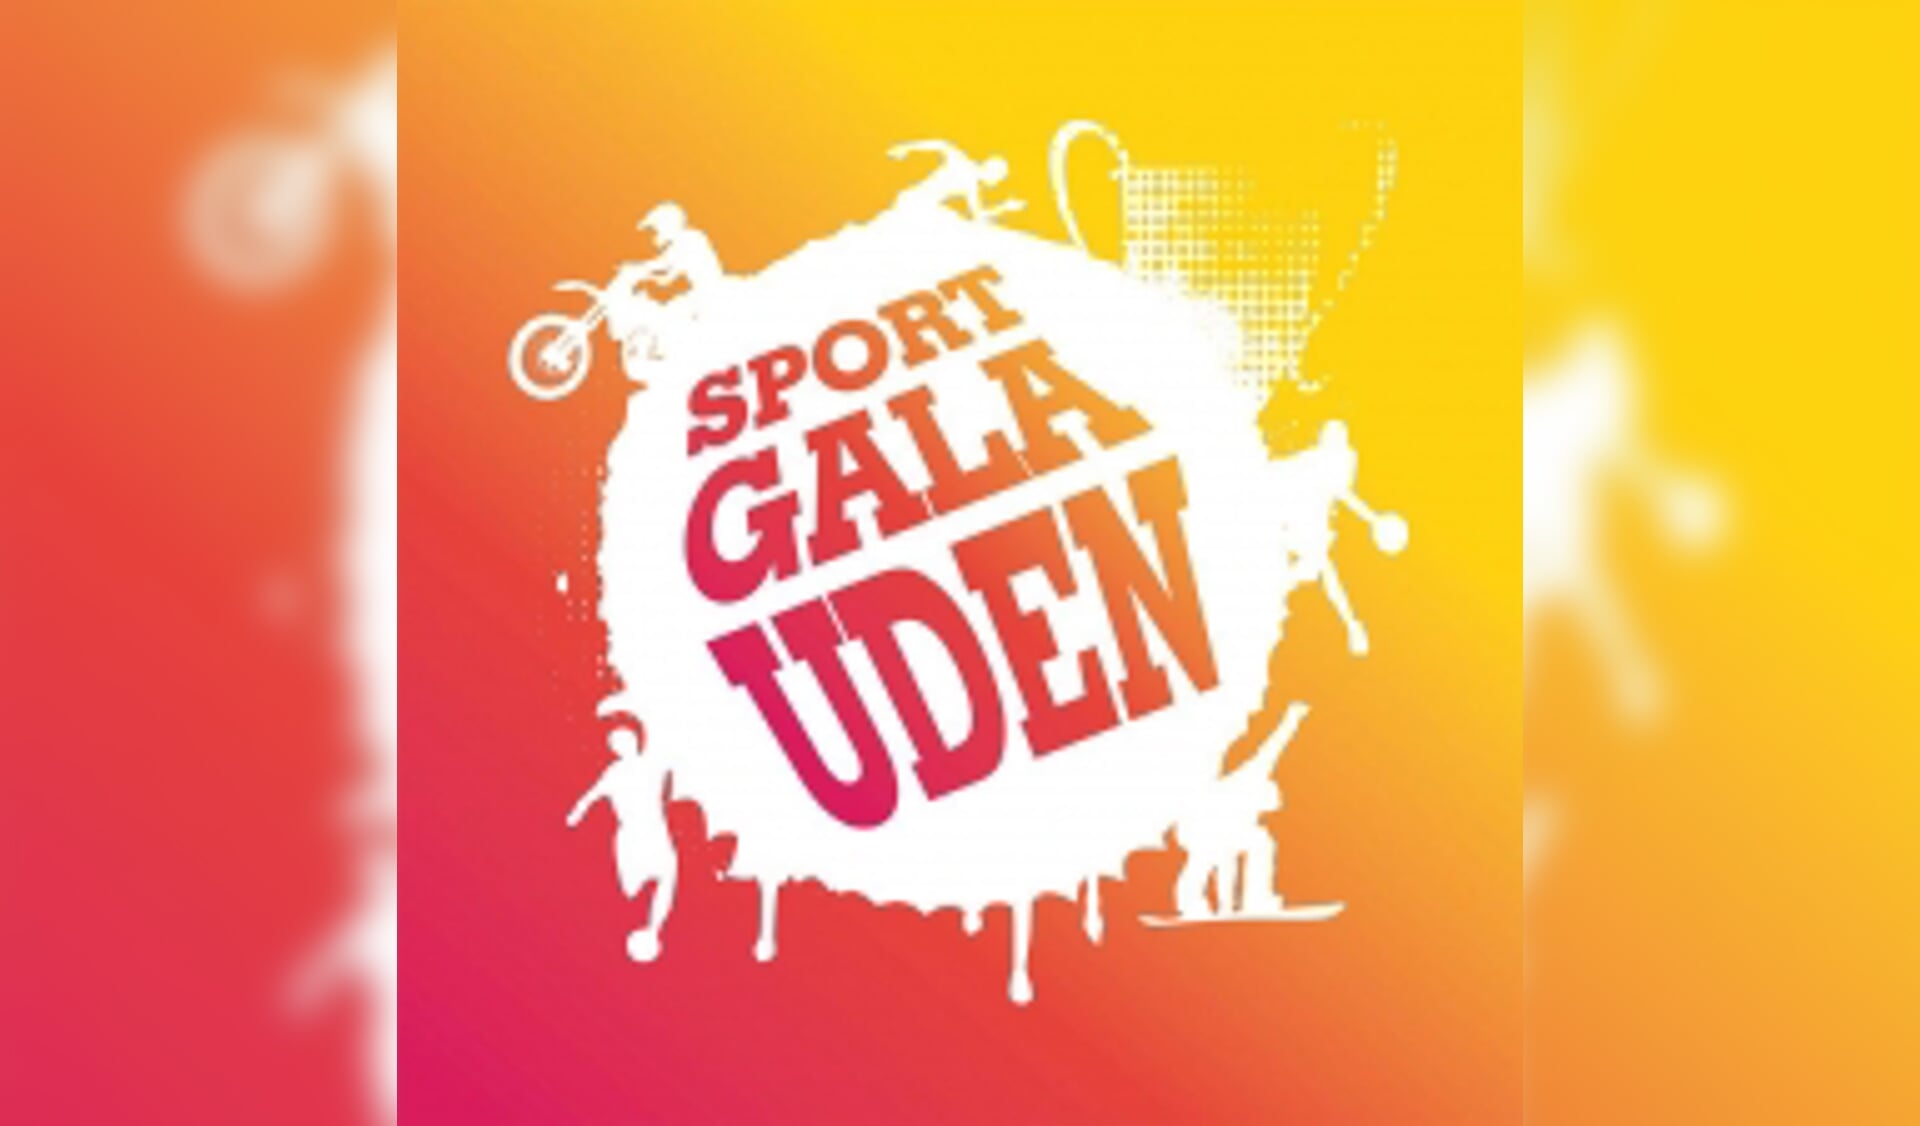 Het Sportgala Uden wordt dit jaar op 10 januari 2018 gehouden